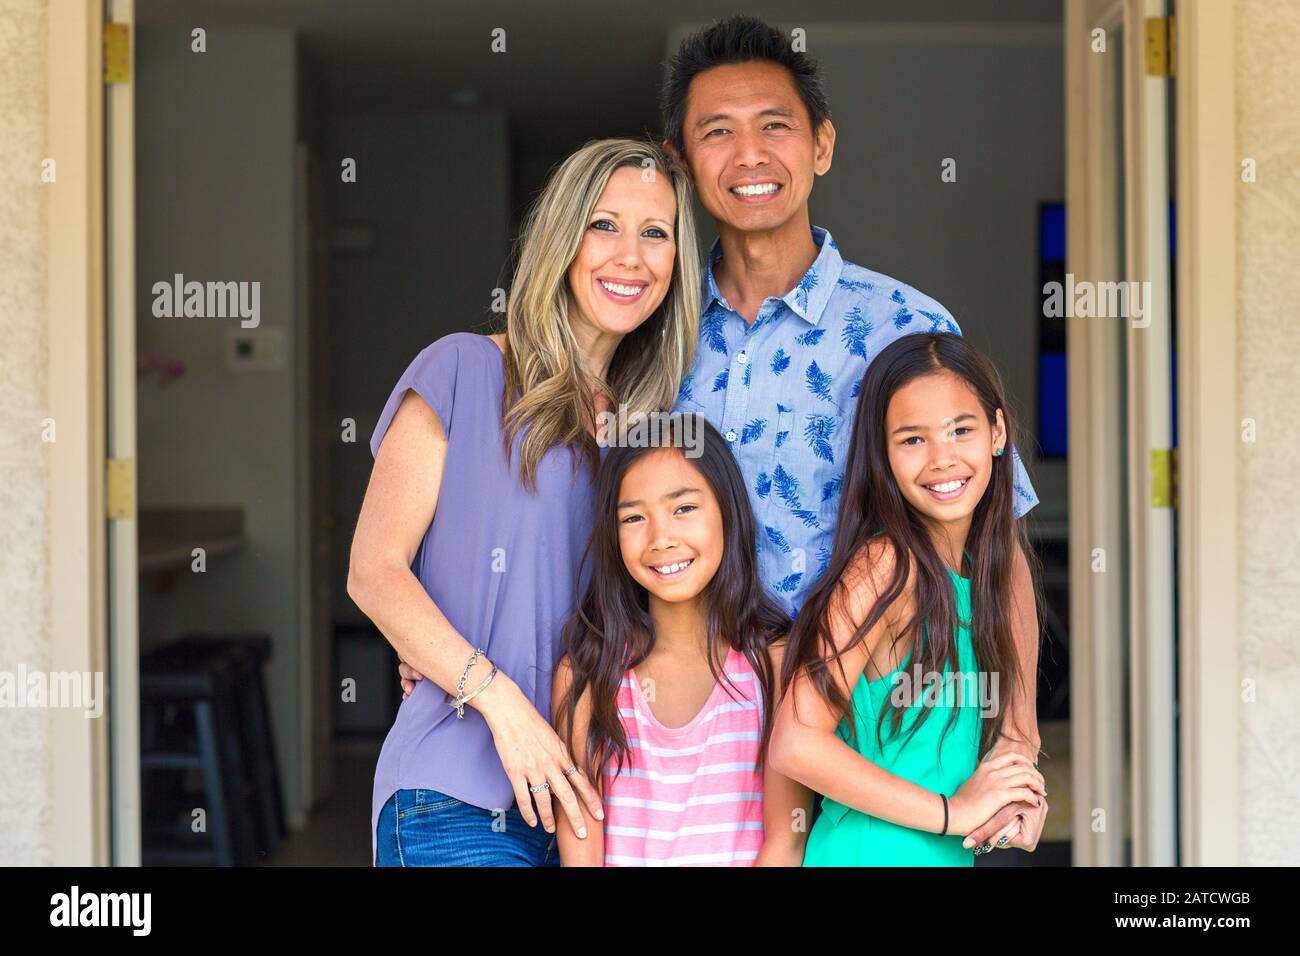 Retrato de una familia feliz de raza mixta. Foto de stock